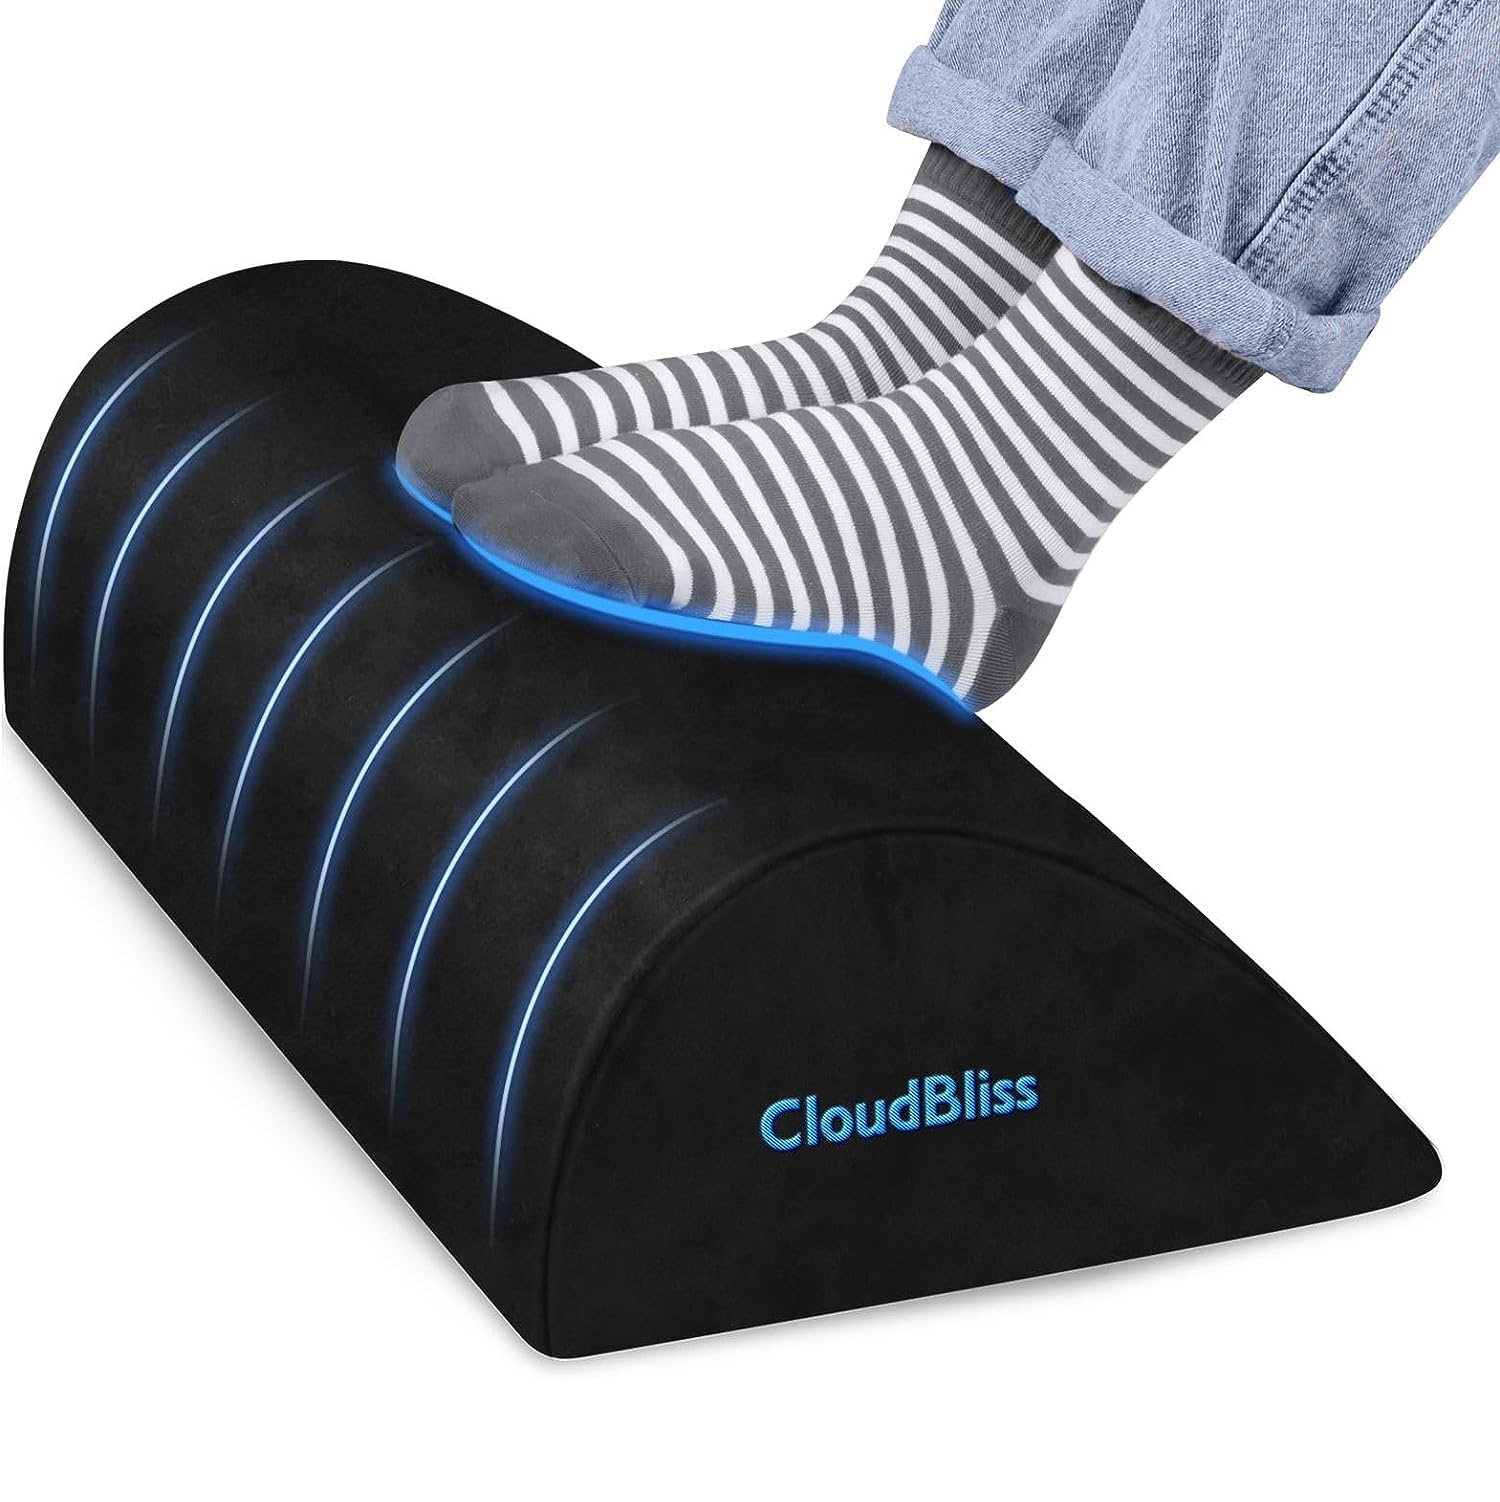 【腳ㄚ放鬆】CloudBliss 記憶海綿支撐腳墊 / 腳凳 $9.74